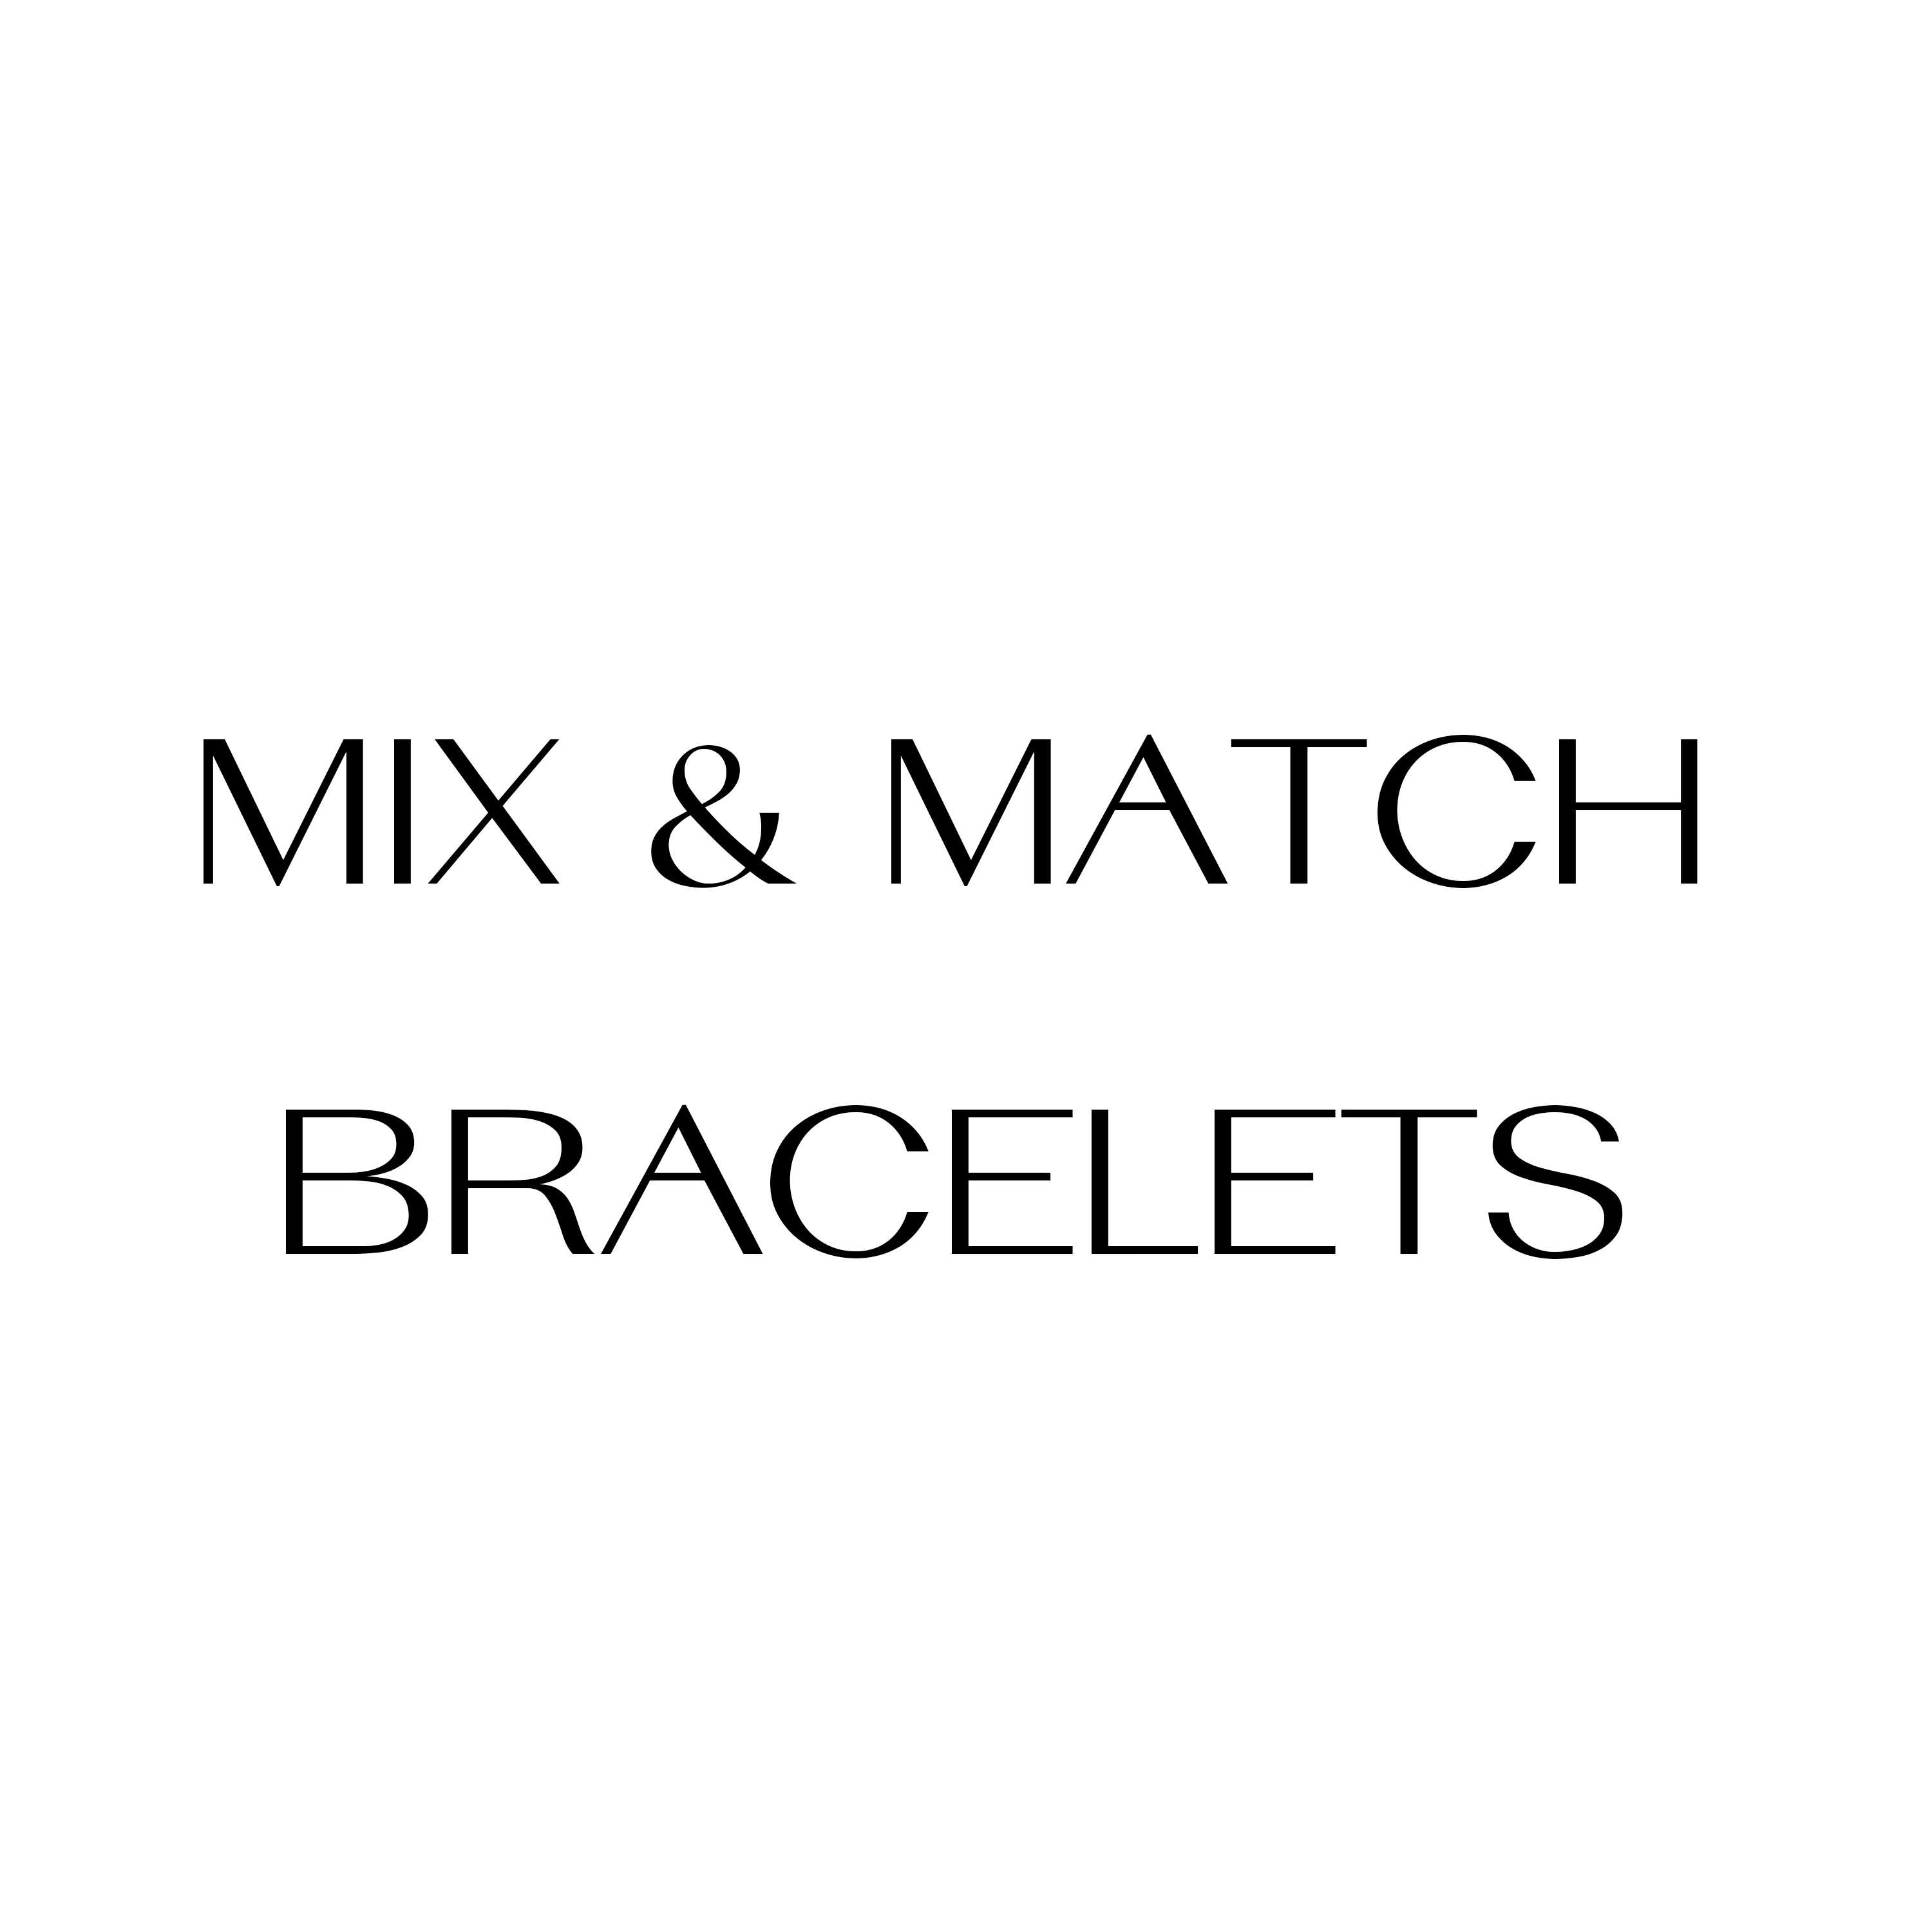 Mix & Match Bracelets